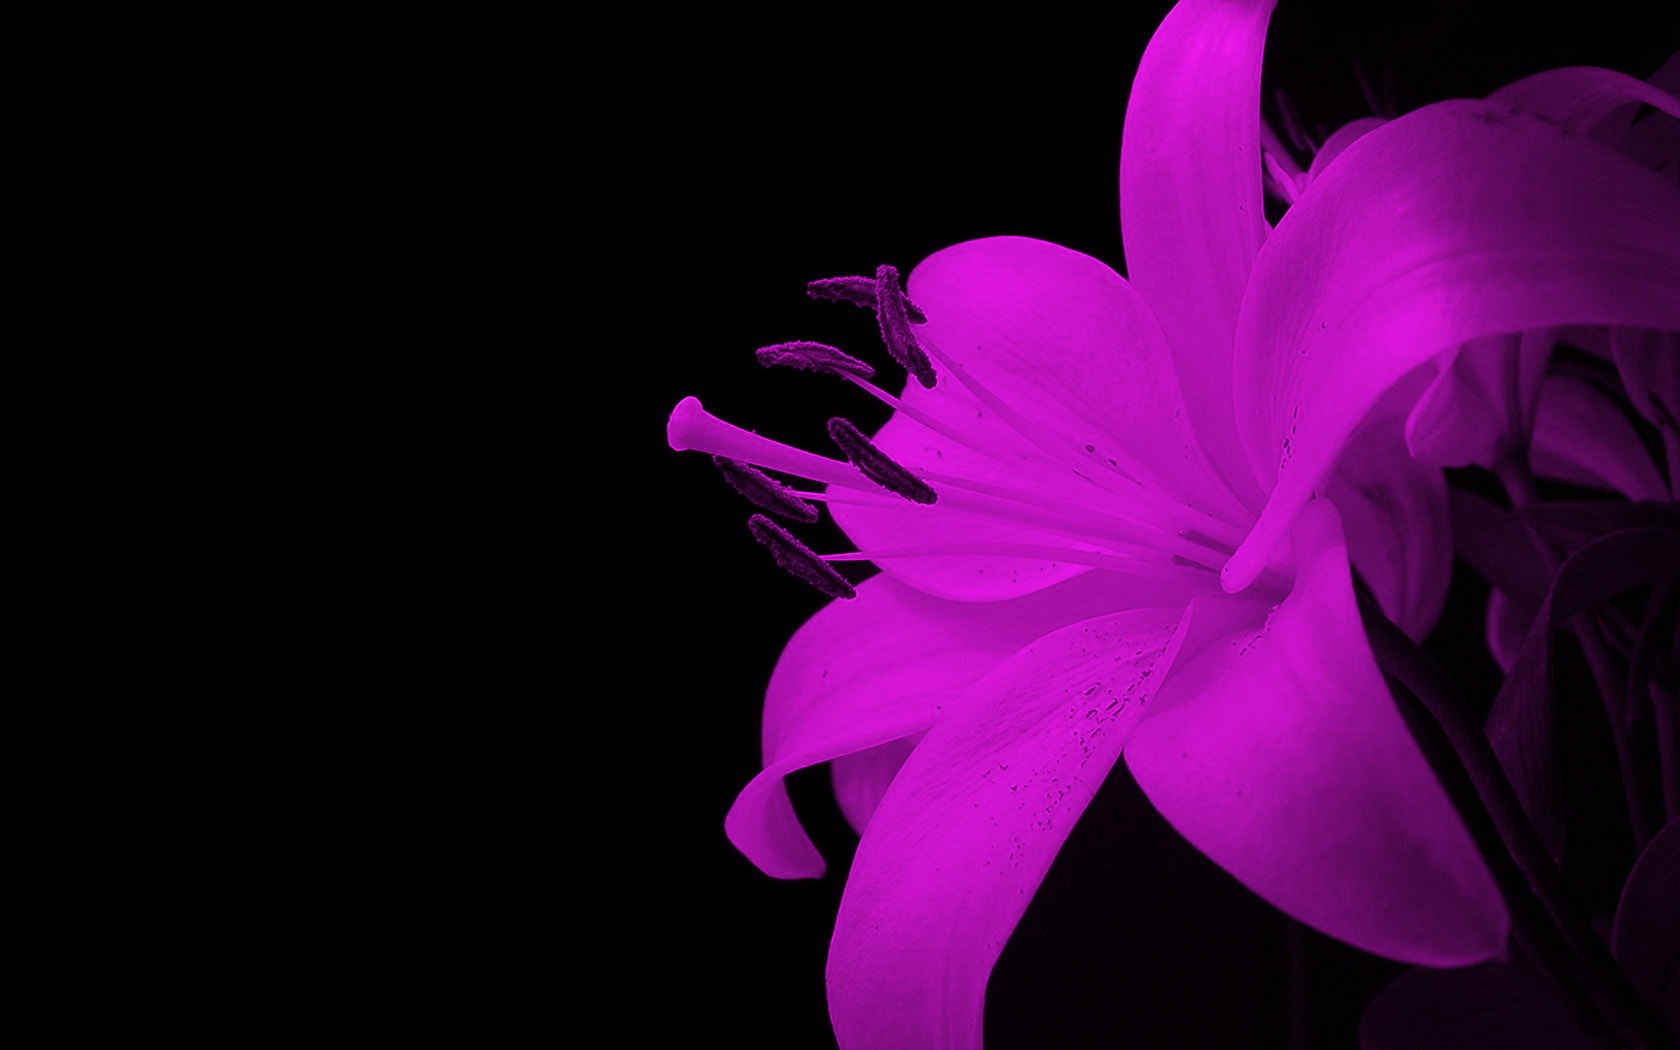 abstract wallpapers hd purple flower - HD Desktop Wallpapers | 4k HD